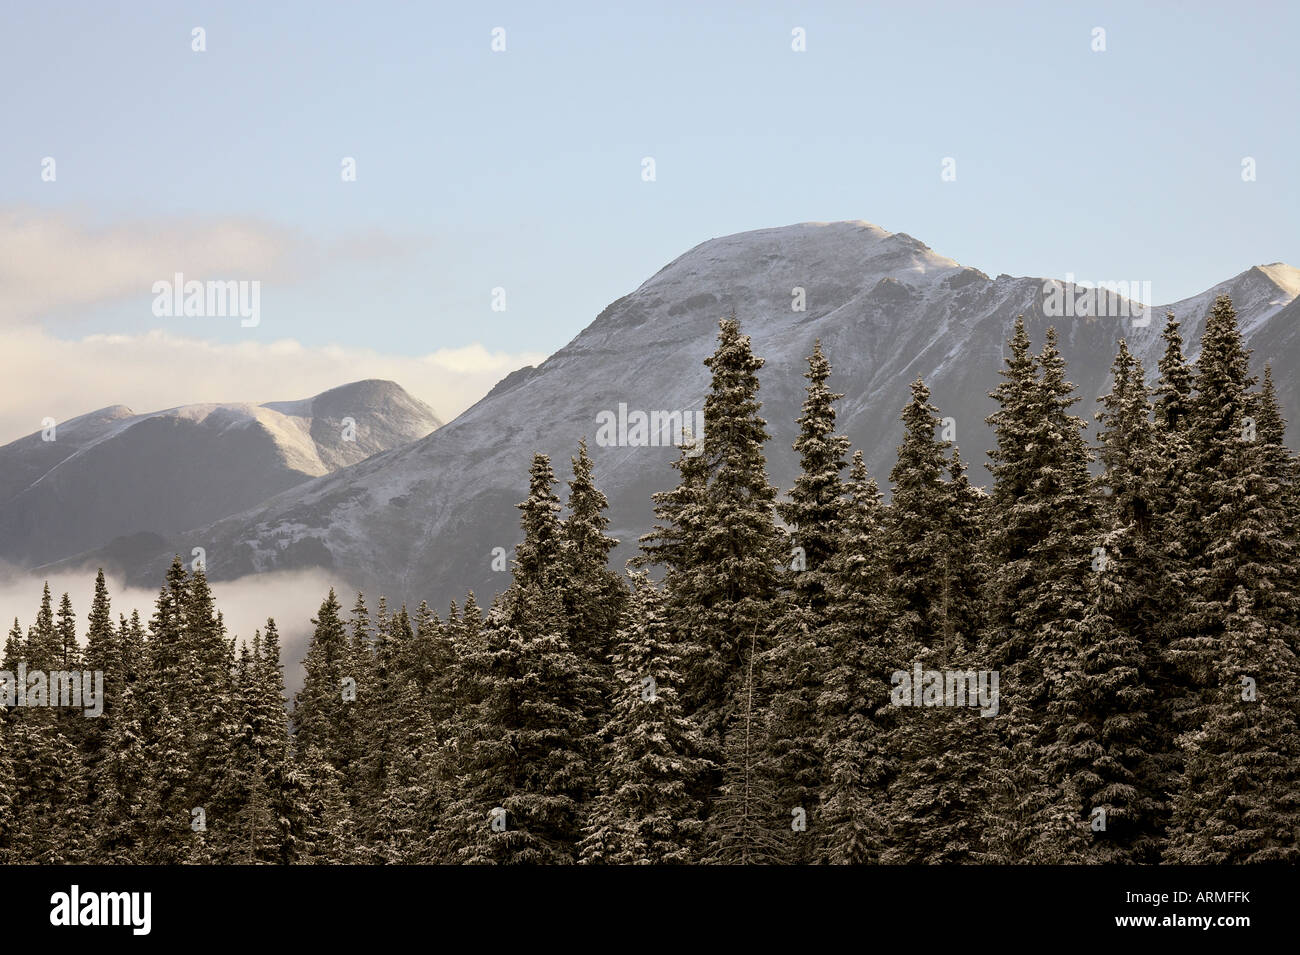 Berge und Evergreens mit Schnee, in der Nähe von Ouray, Colorado, Vereinigte Staaten von Amerika, Nordamerika Stockfoto